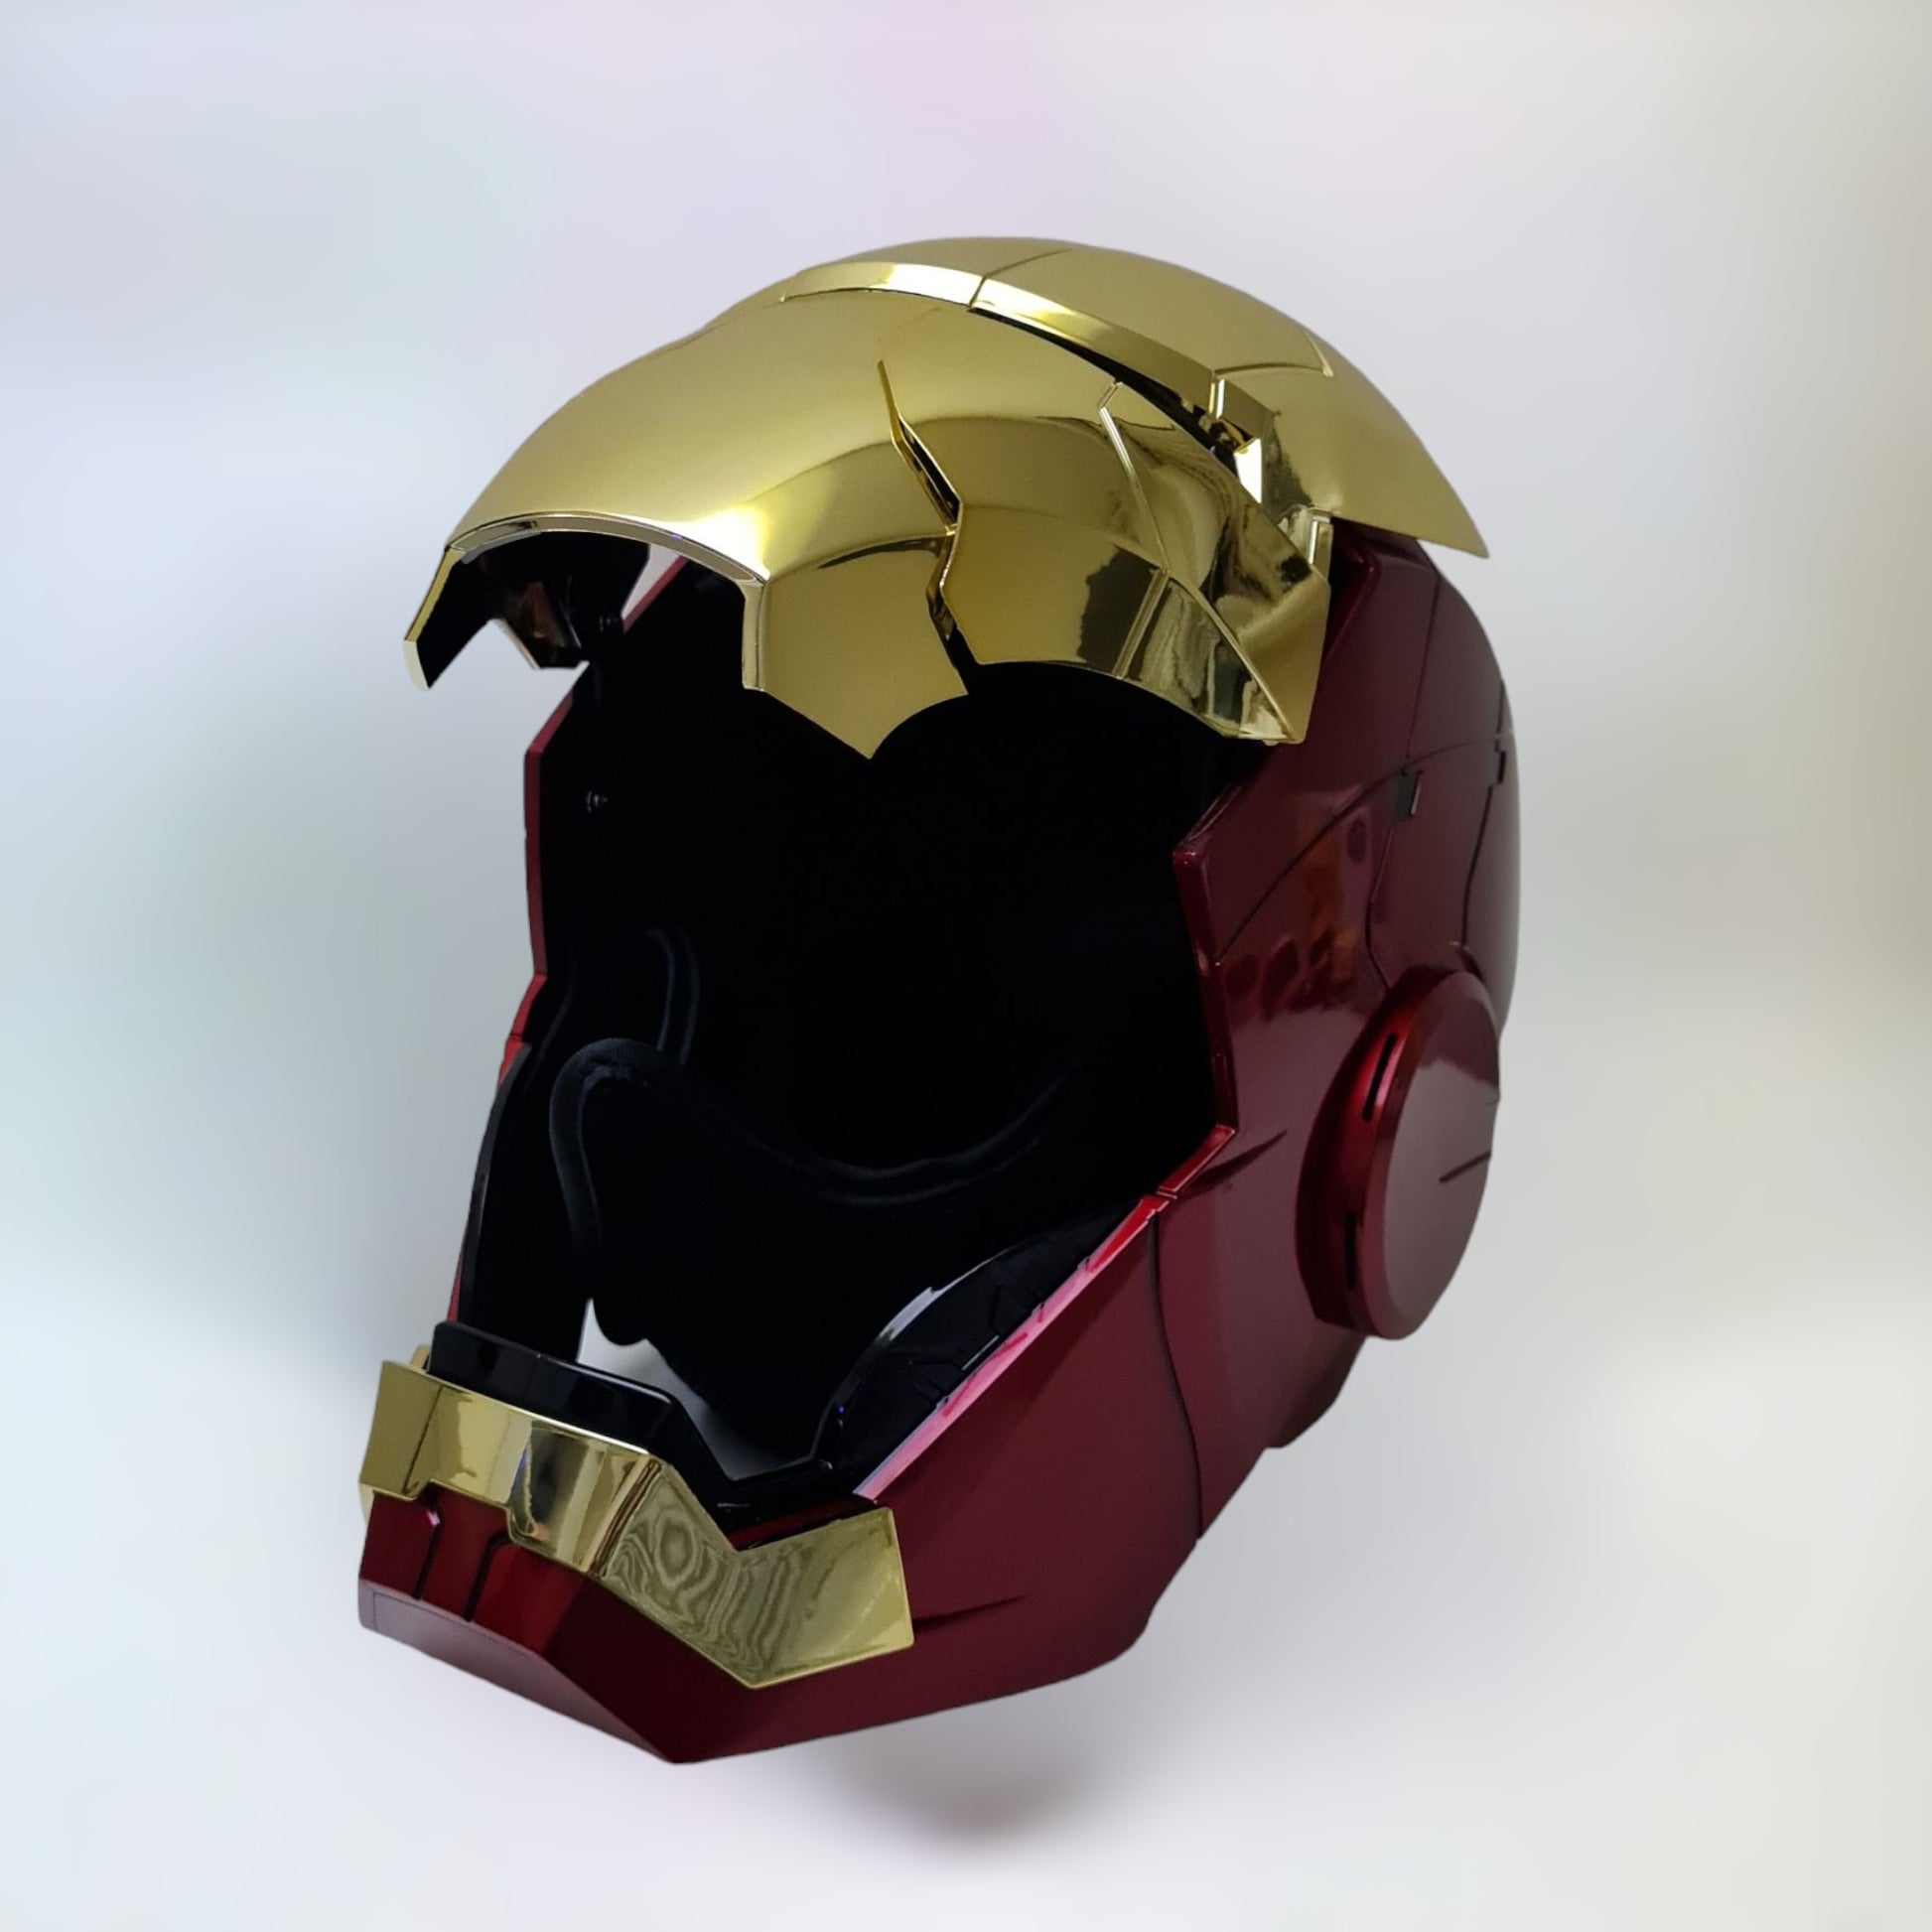 Iron Man Helmet MK5 Gold Jarvis Voice Activation Open Style 2